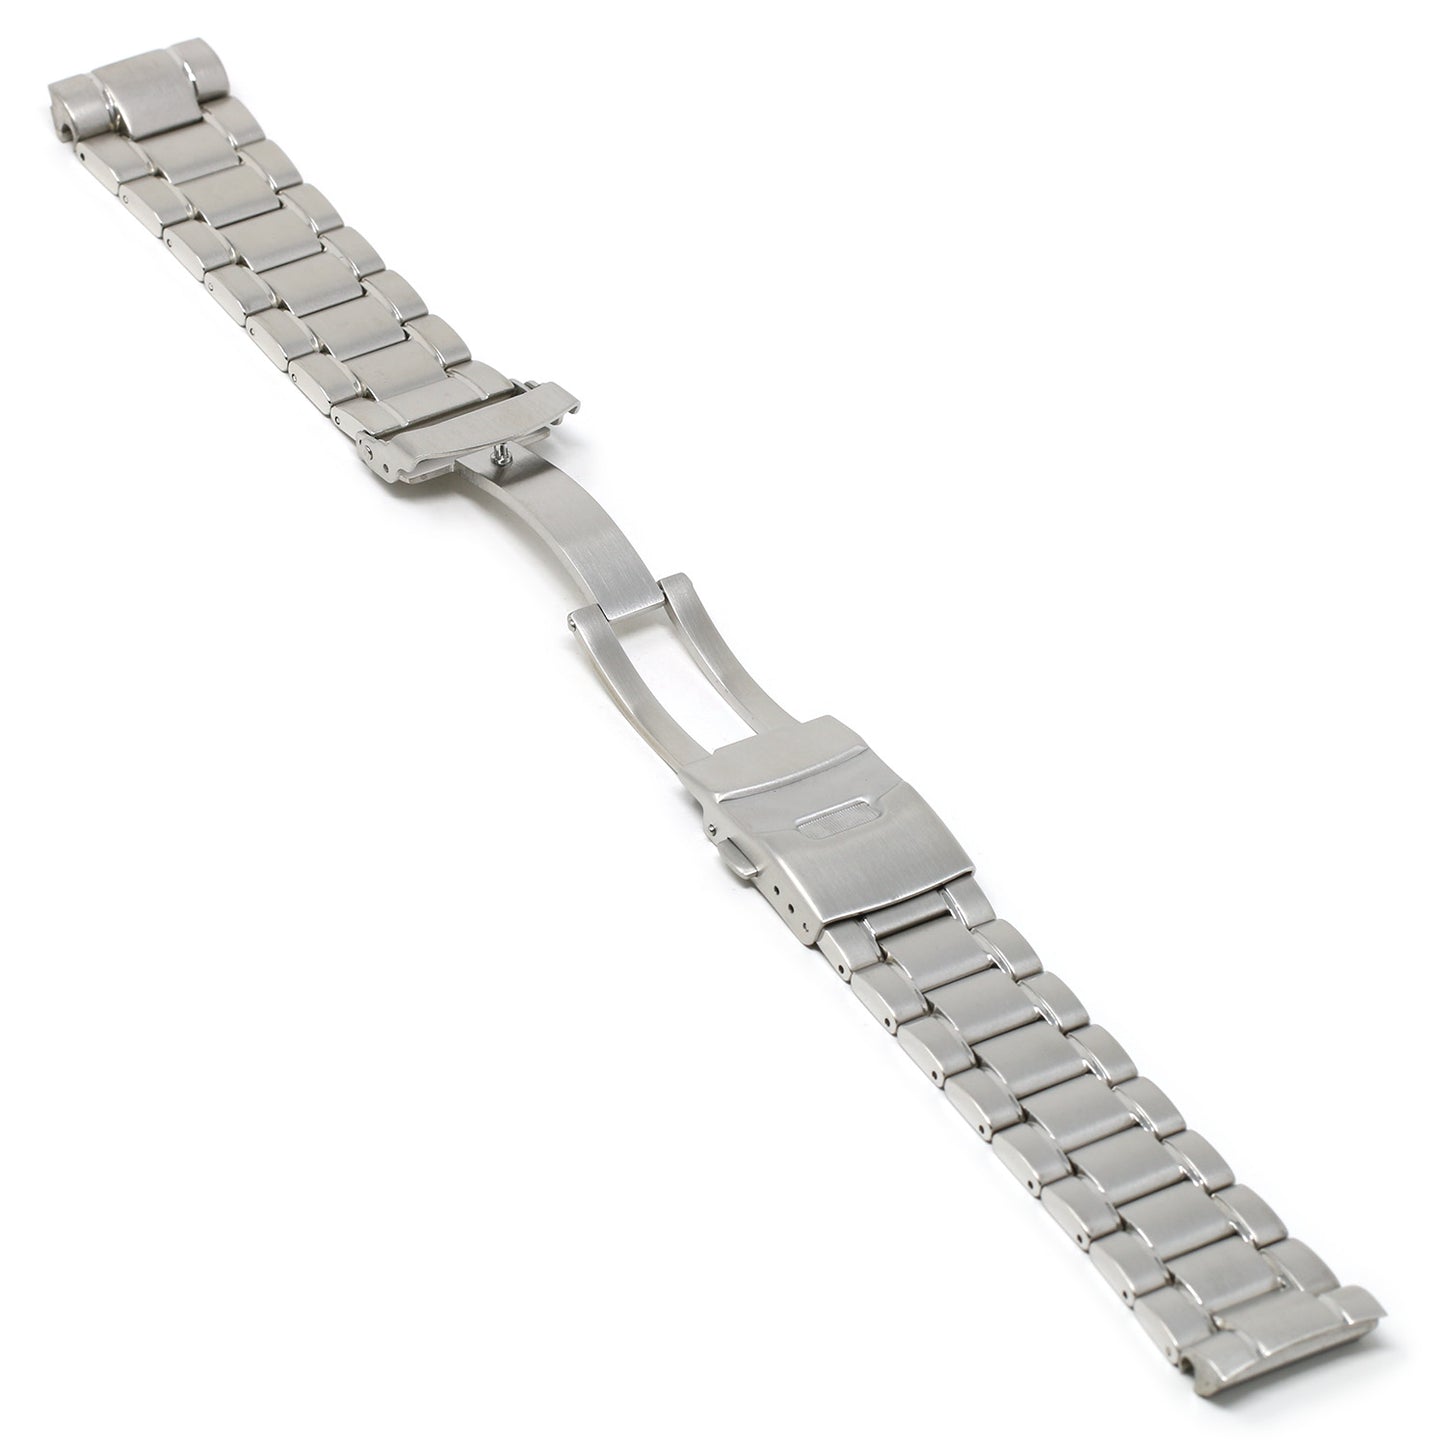 Metal Bracelet for Seiko Turtle